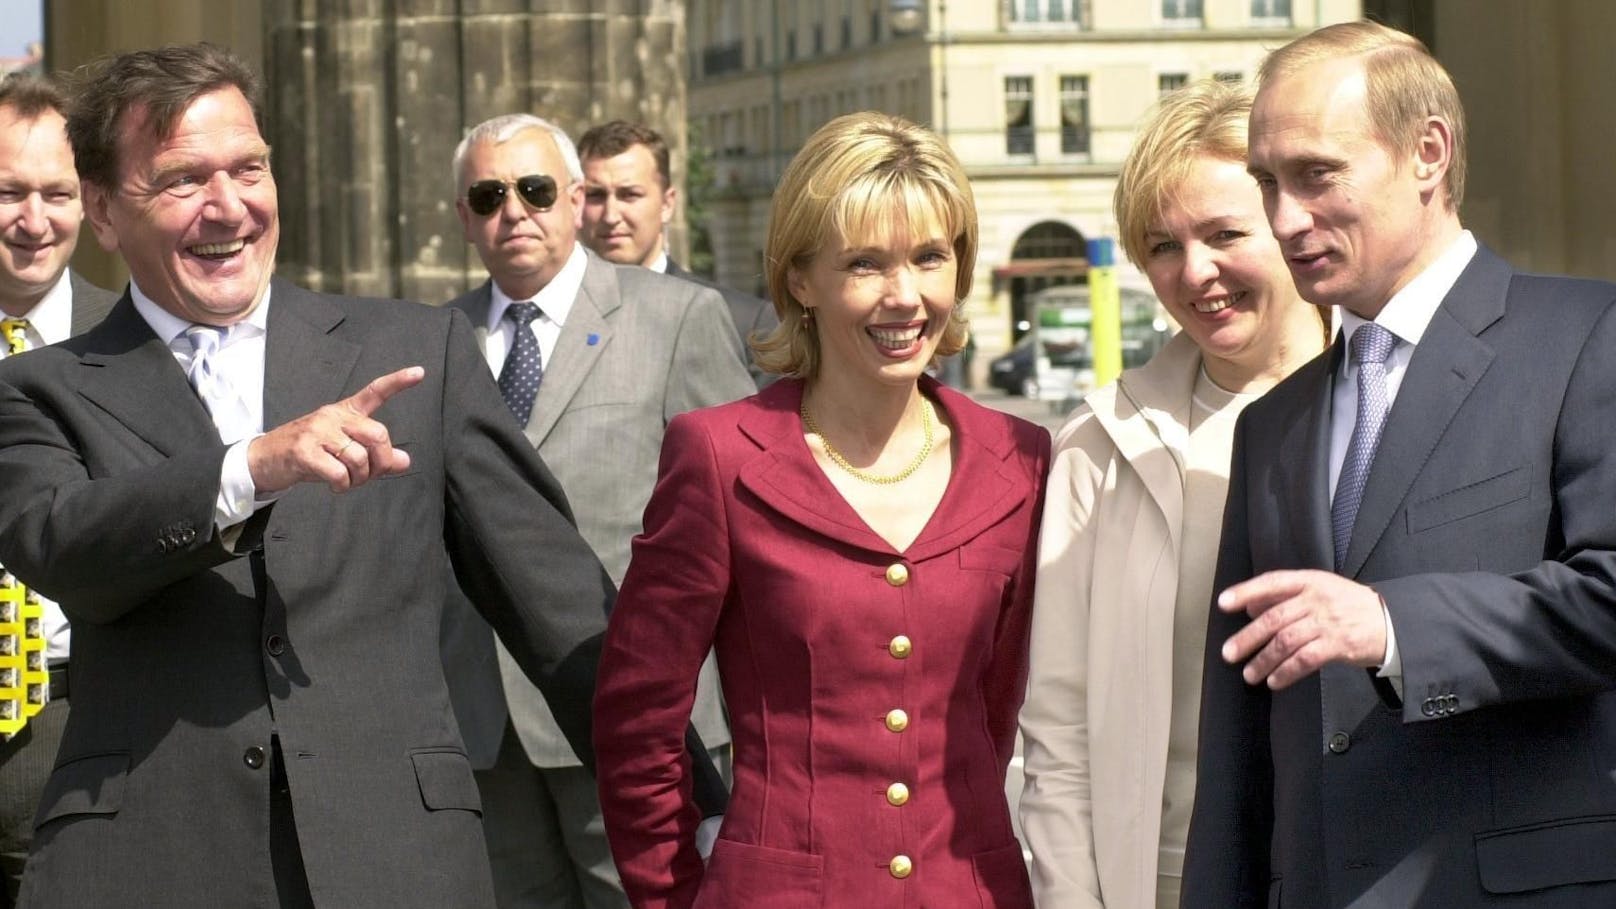 Putin hat gute Freunde in der obersten Riege der Politik. Im Jahr 2000 reiste er mit seiner Frau Ludmilla in die deutsche Hauptstadt Berlin und traf dort auf den ehemaligen SPD-Kanzler Gerd Schröder, der bis heute als enger Vertrauter des russischen Präsidenten gilt.